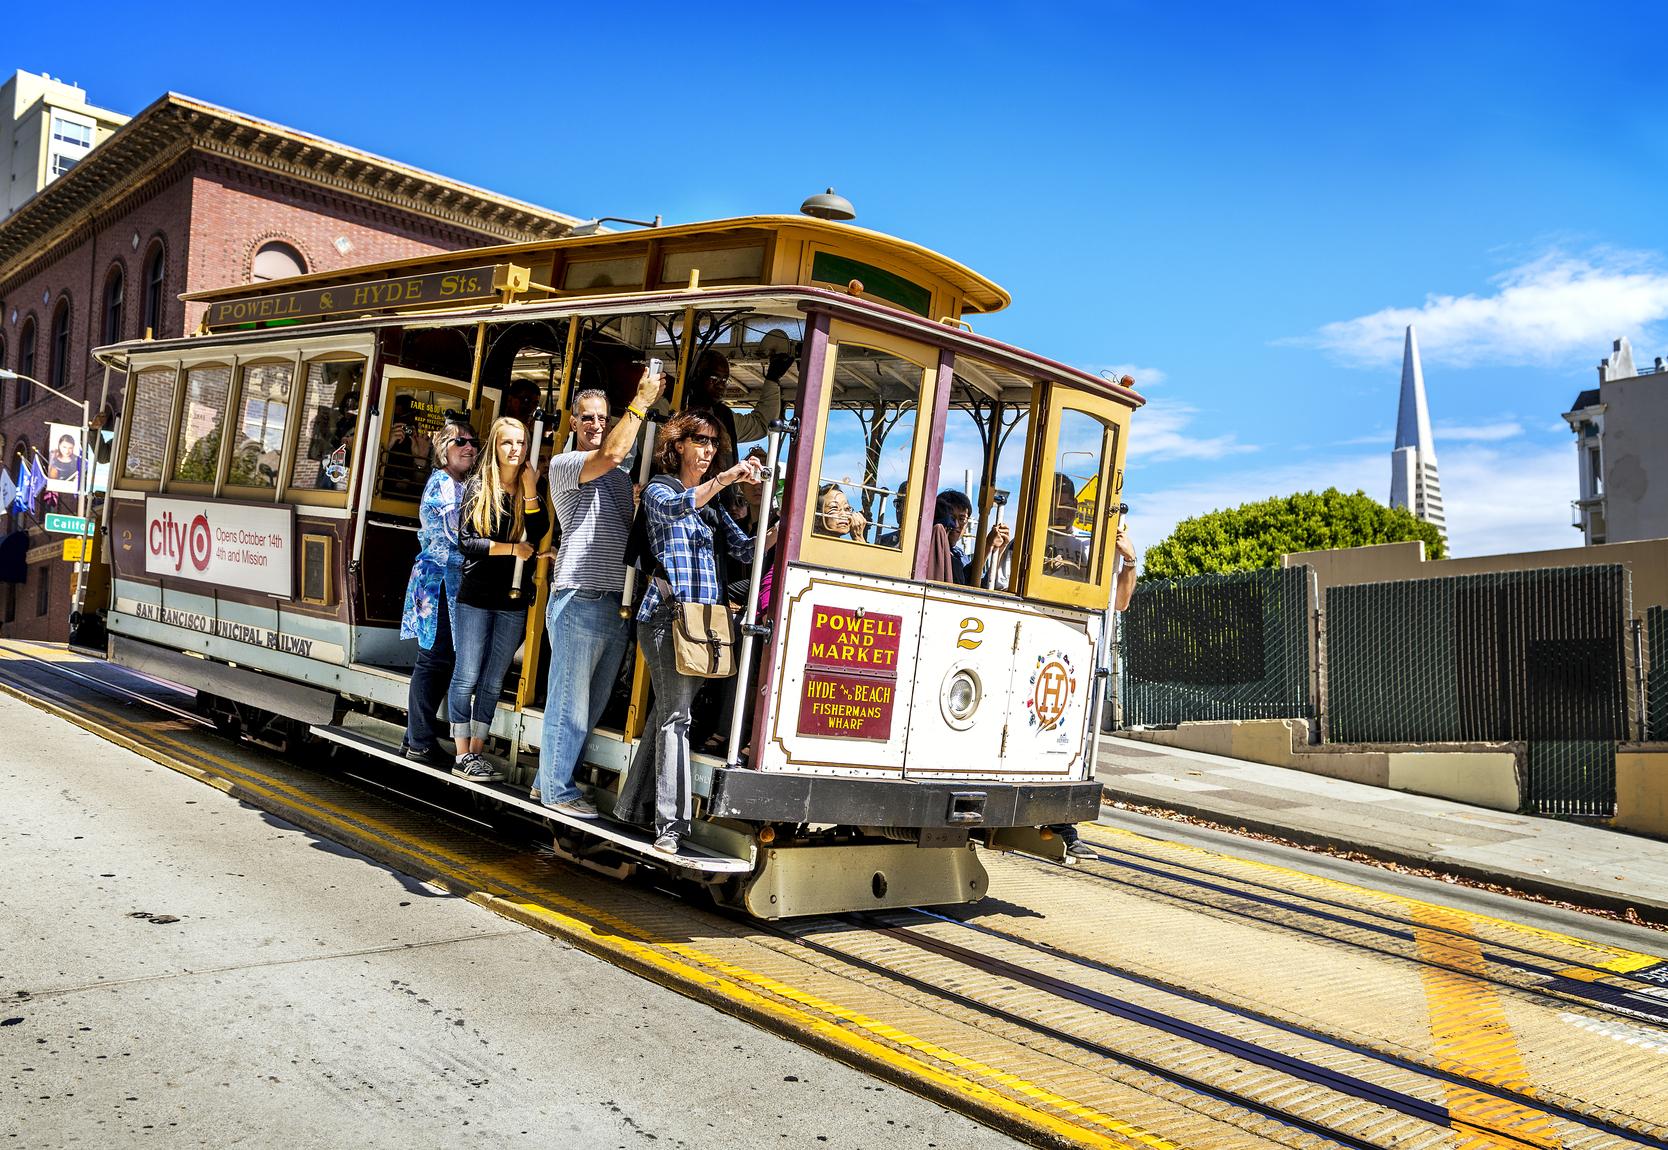 De wereldberoemde trolley in San Francisco. (foto istock)